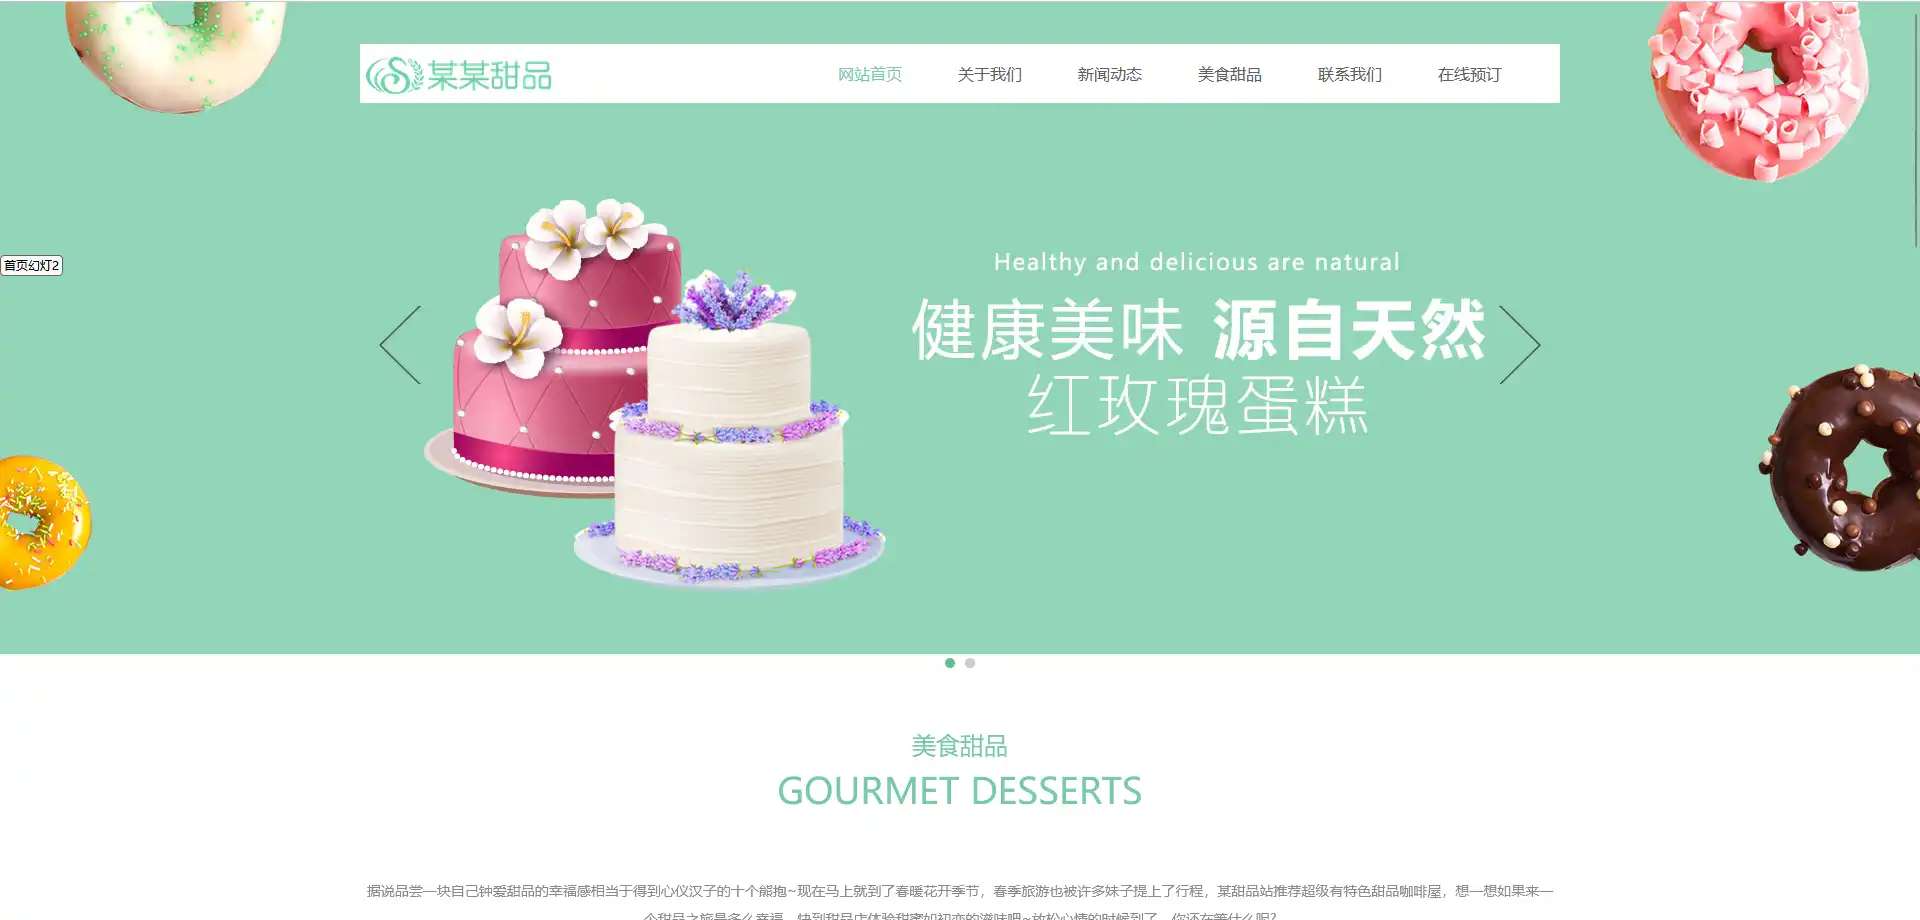 美食甜品蛋糕响应式eyoucms网站模板